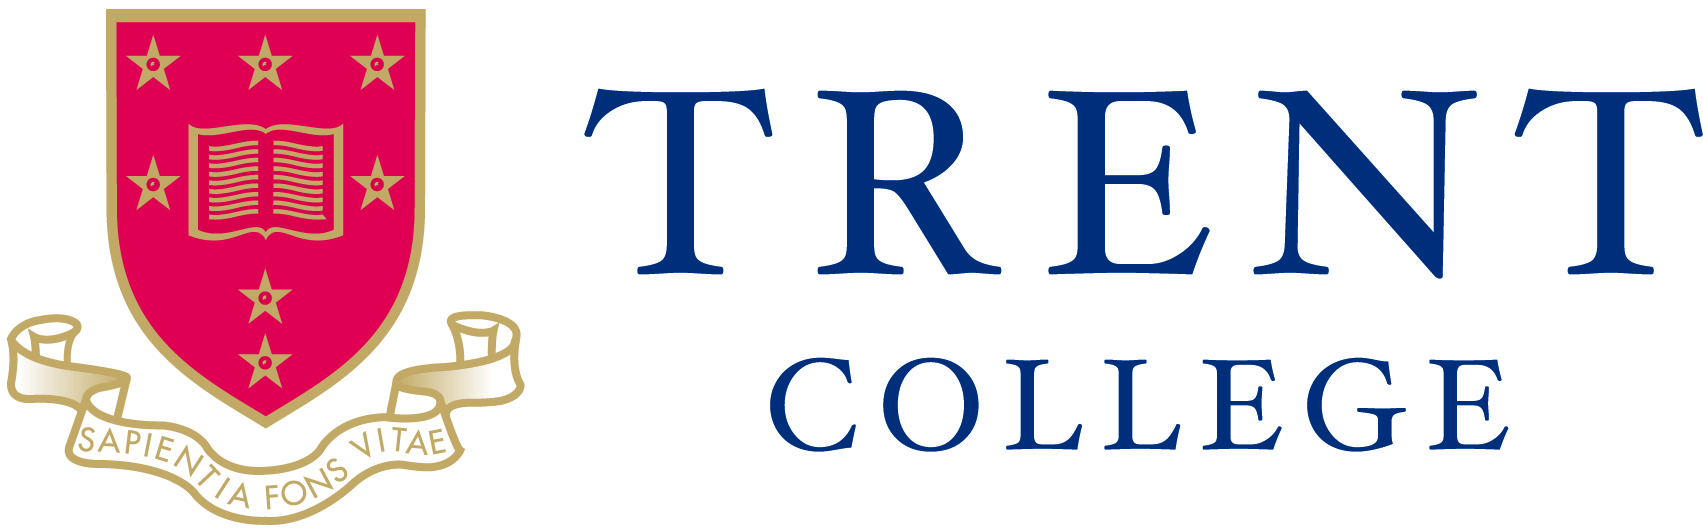 Trent-logo_NEW19-2.jpg